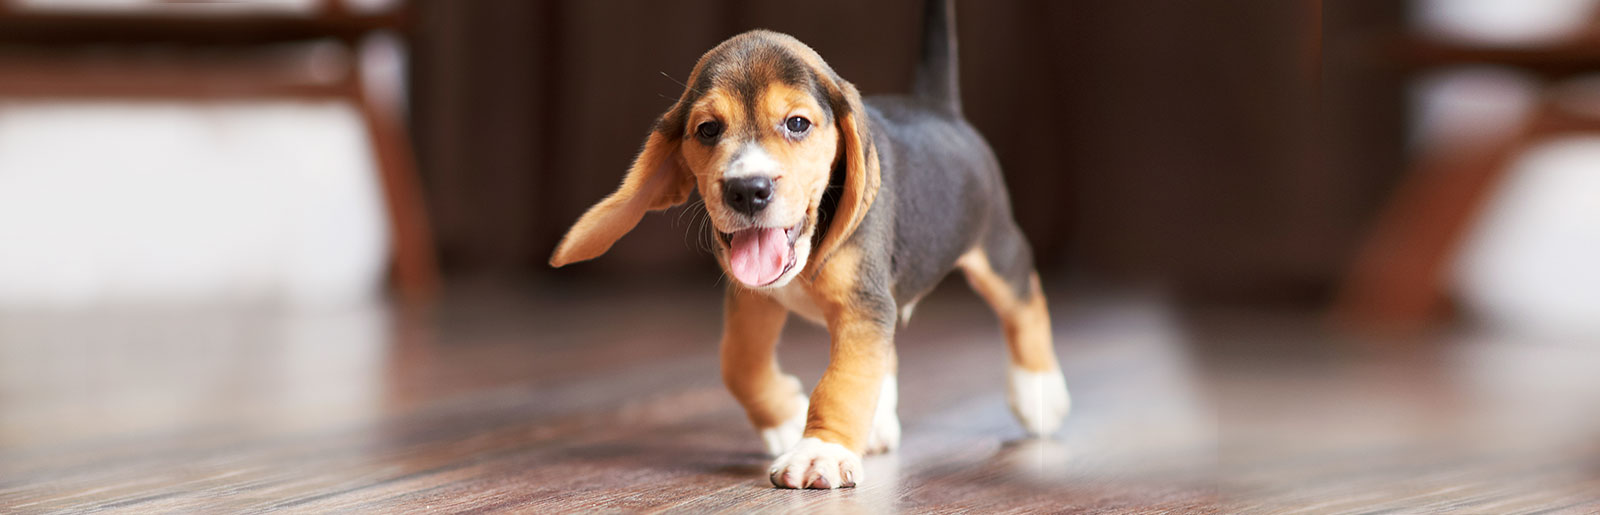 Tipps zum Thema Hundefutter, Transport des Welpen nach Hause sowie die Eingewöhnung im sicheren Zuhause